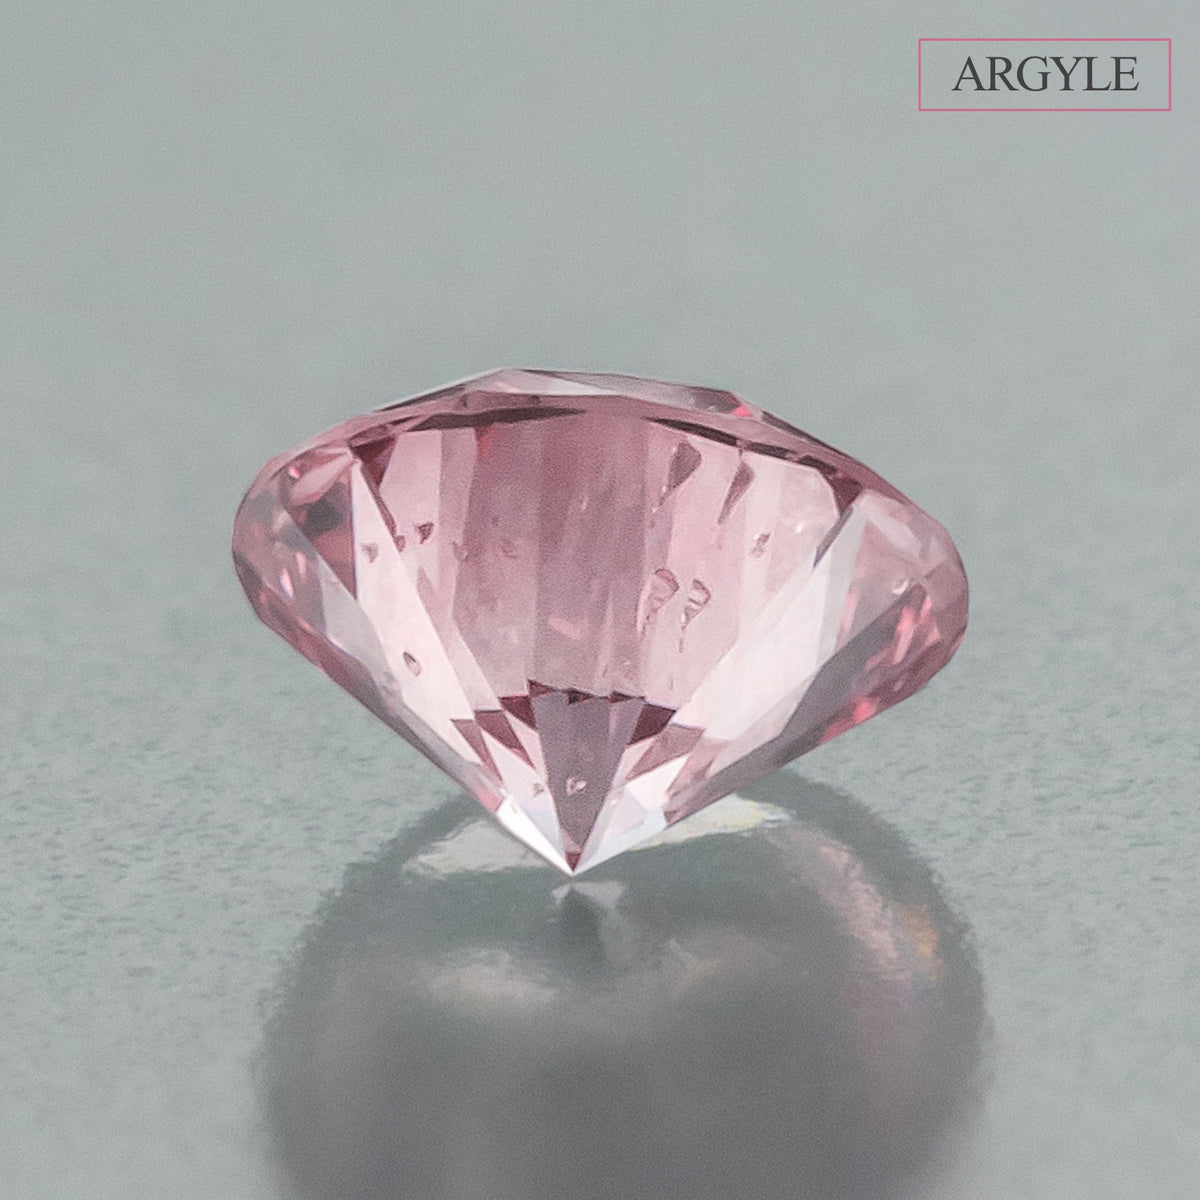 アーガイル産【APD】証明書付きピンクダイヤモンドルース 0.3ct Round Fancy Intense Pink SI2